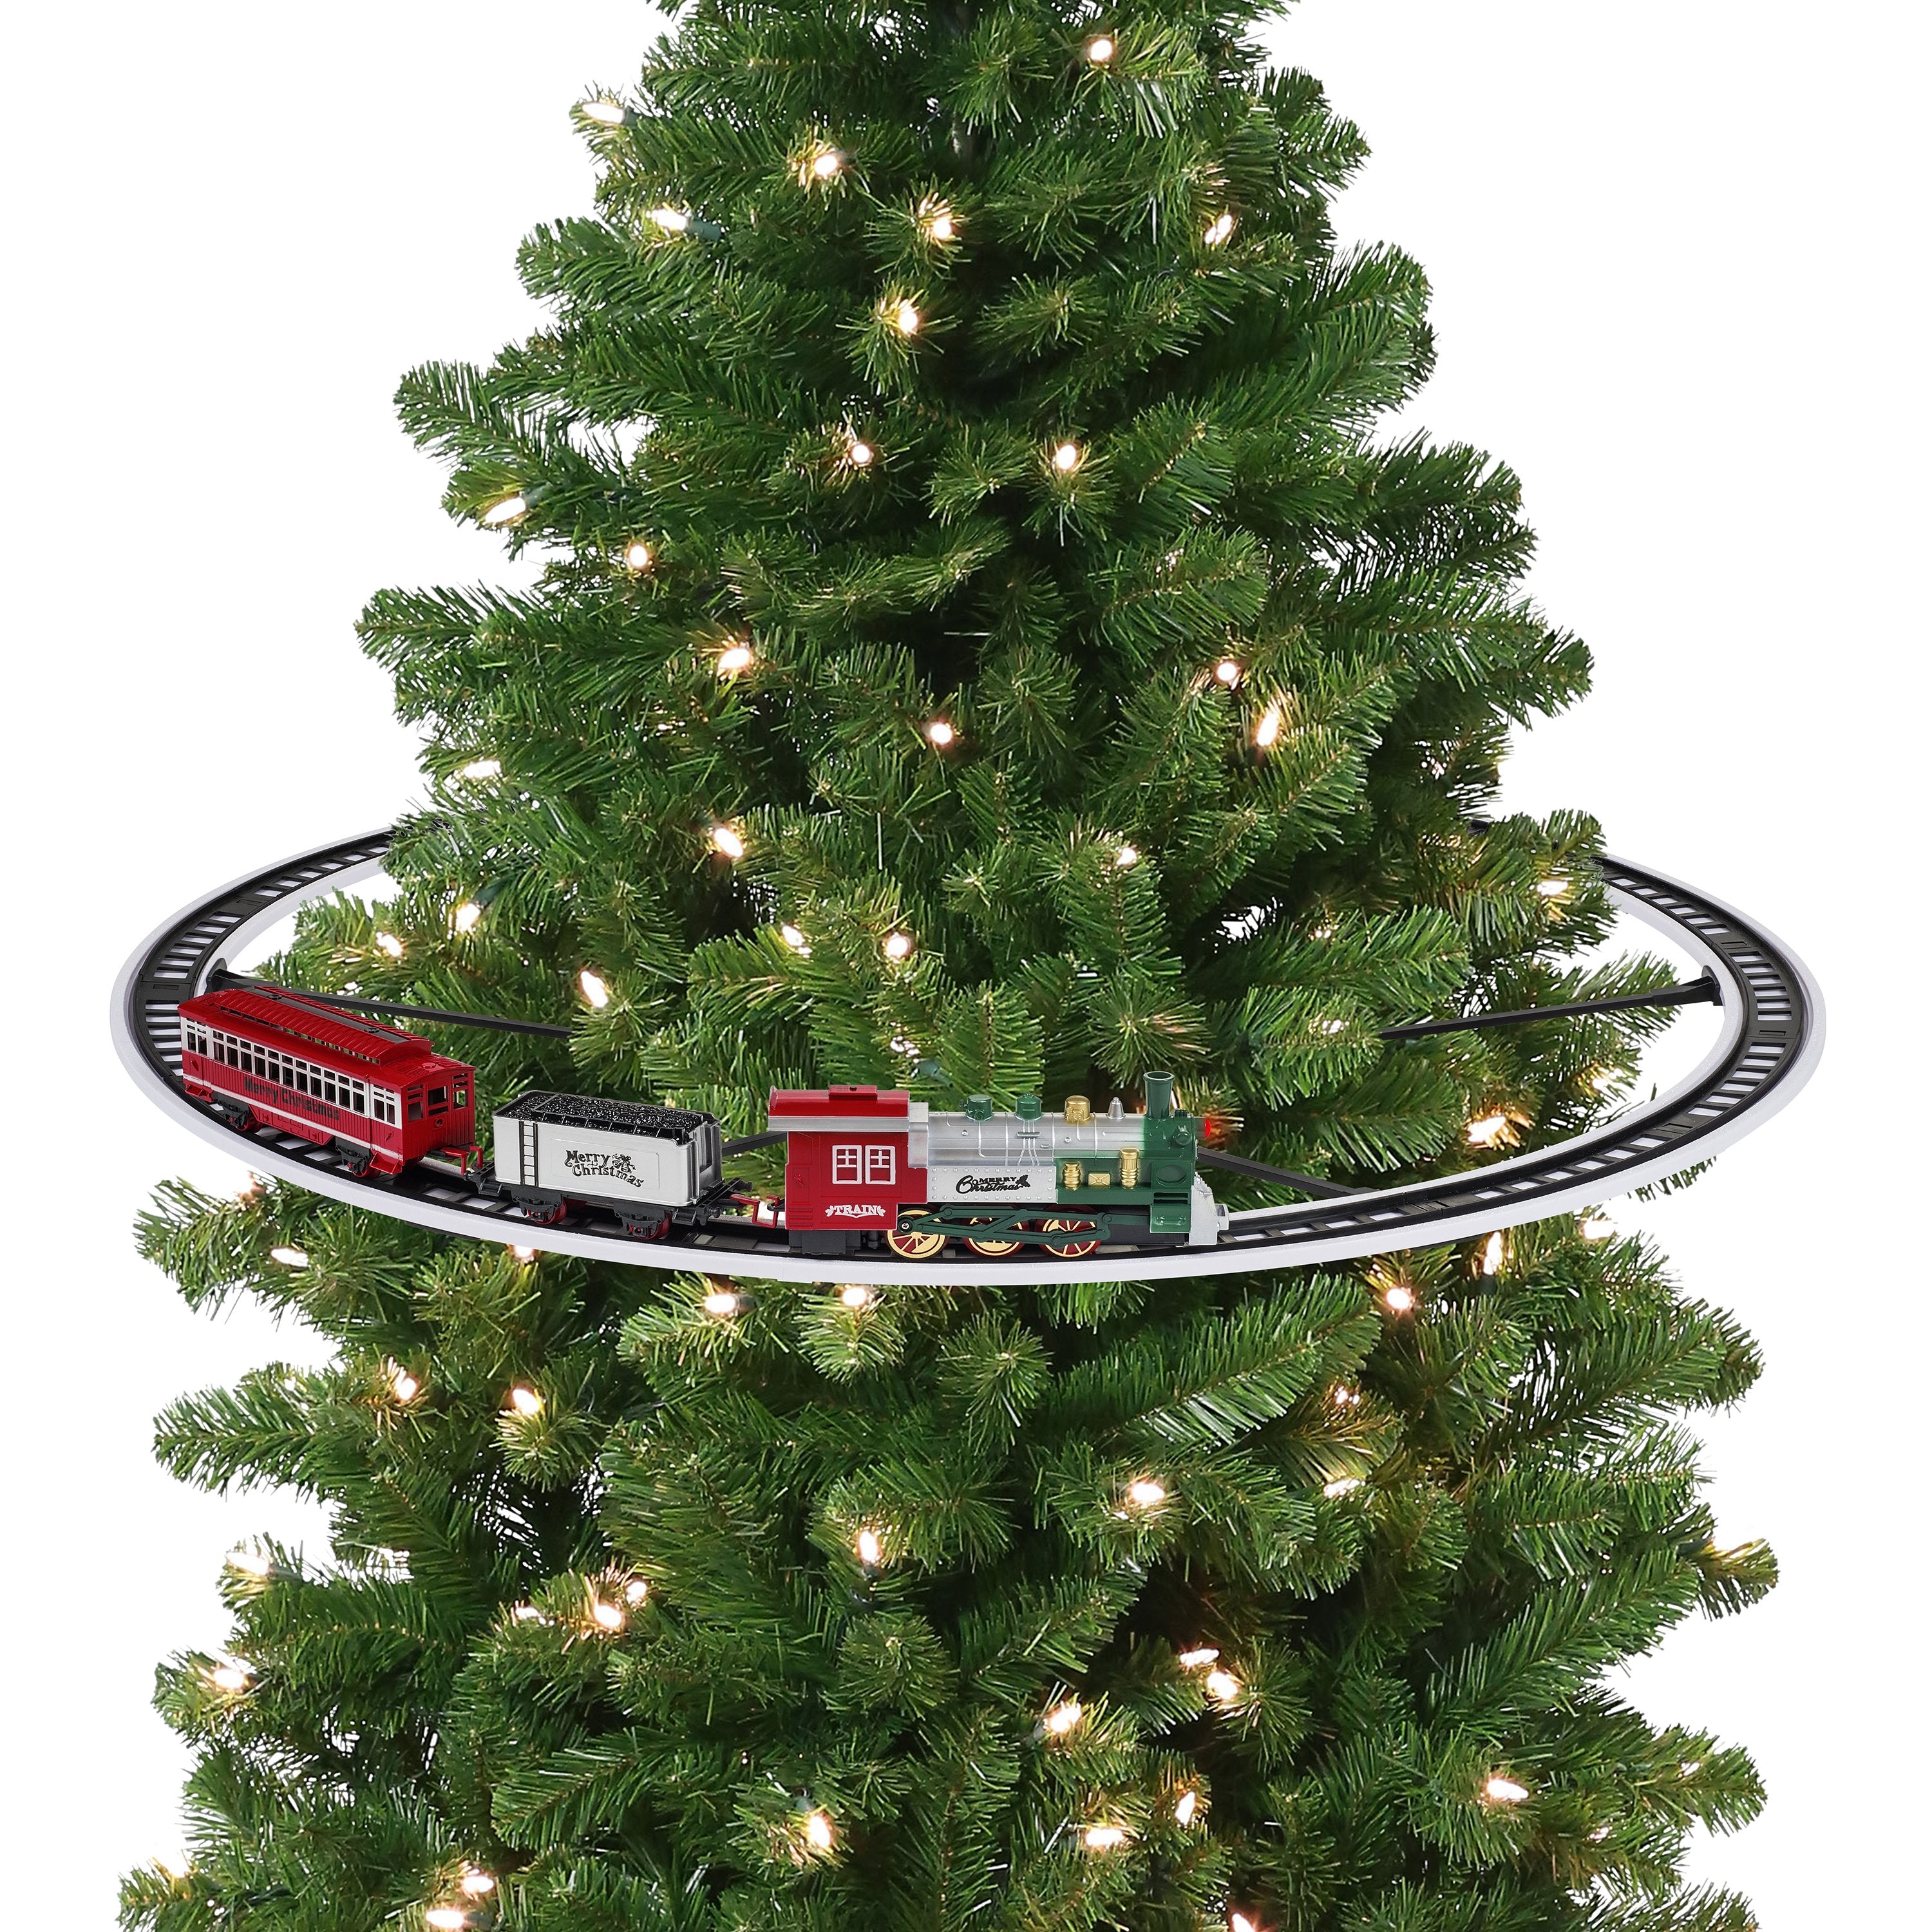 Mr. Christmas - Train Around the Tree - KleinLand